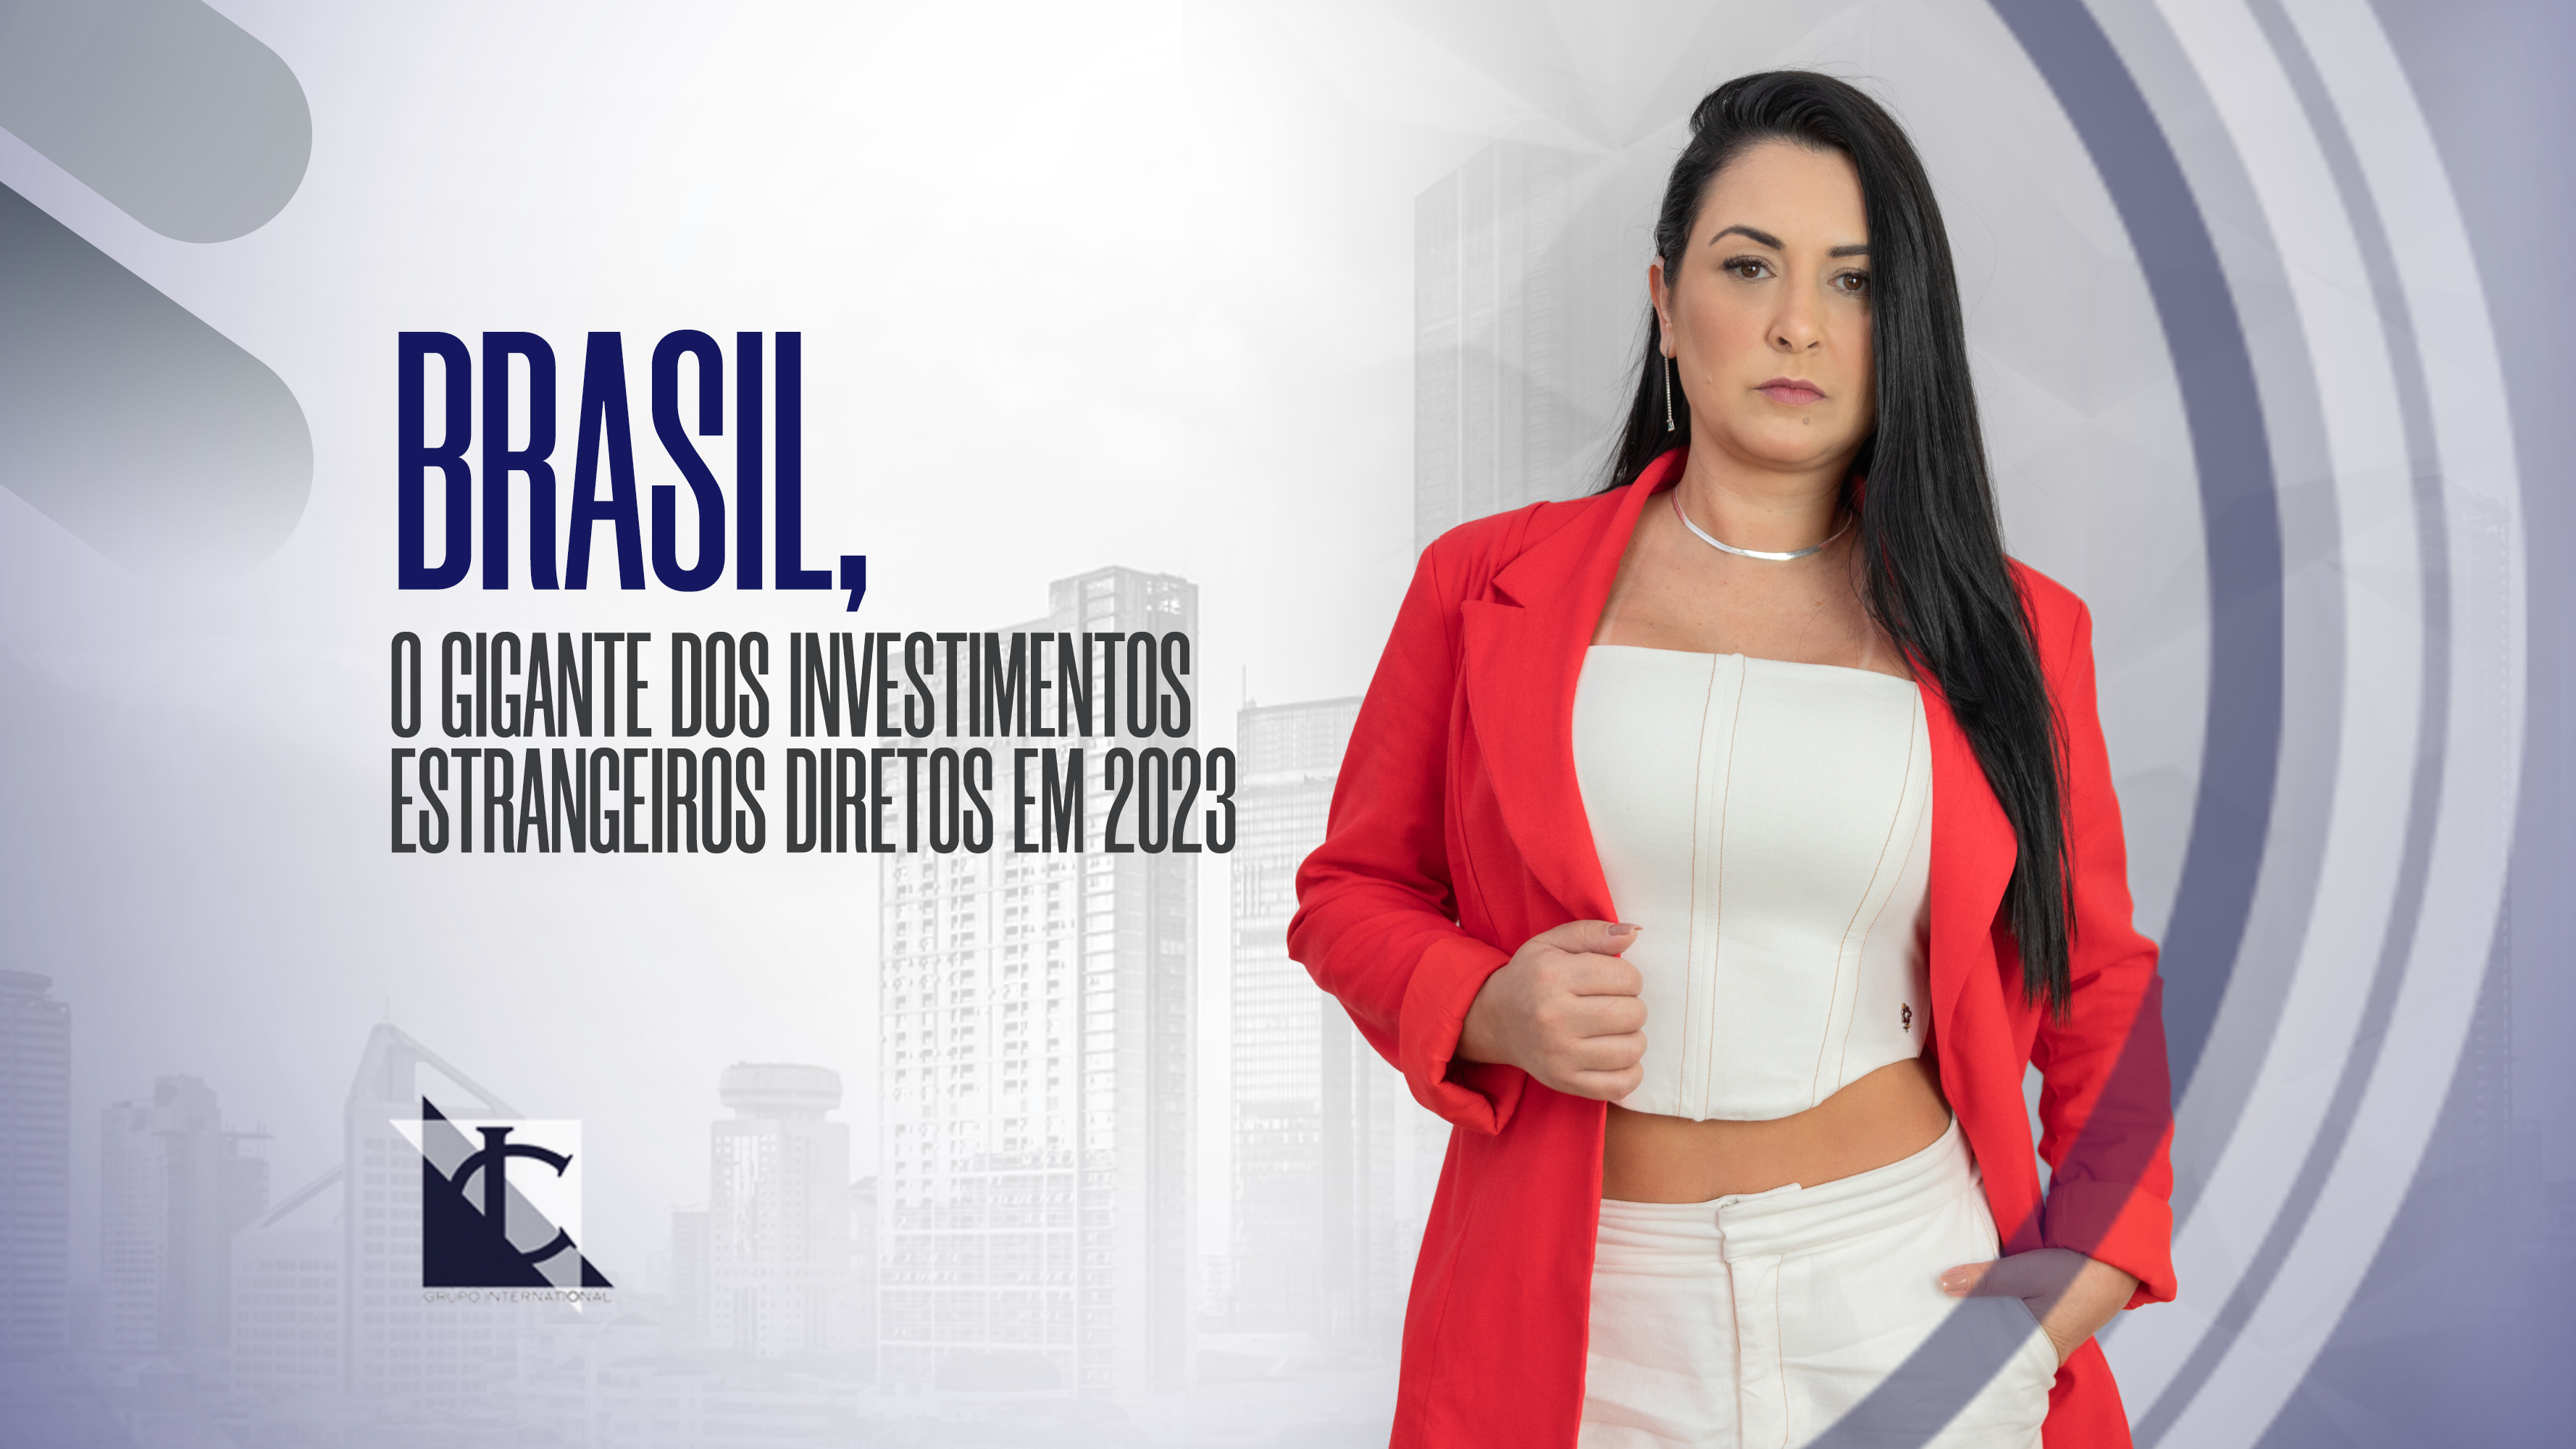 Leer más sobre BRASIL, EL GIGANTE DE LA INVERSIÓN DIRECTA EXTRANJERA EN 2023